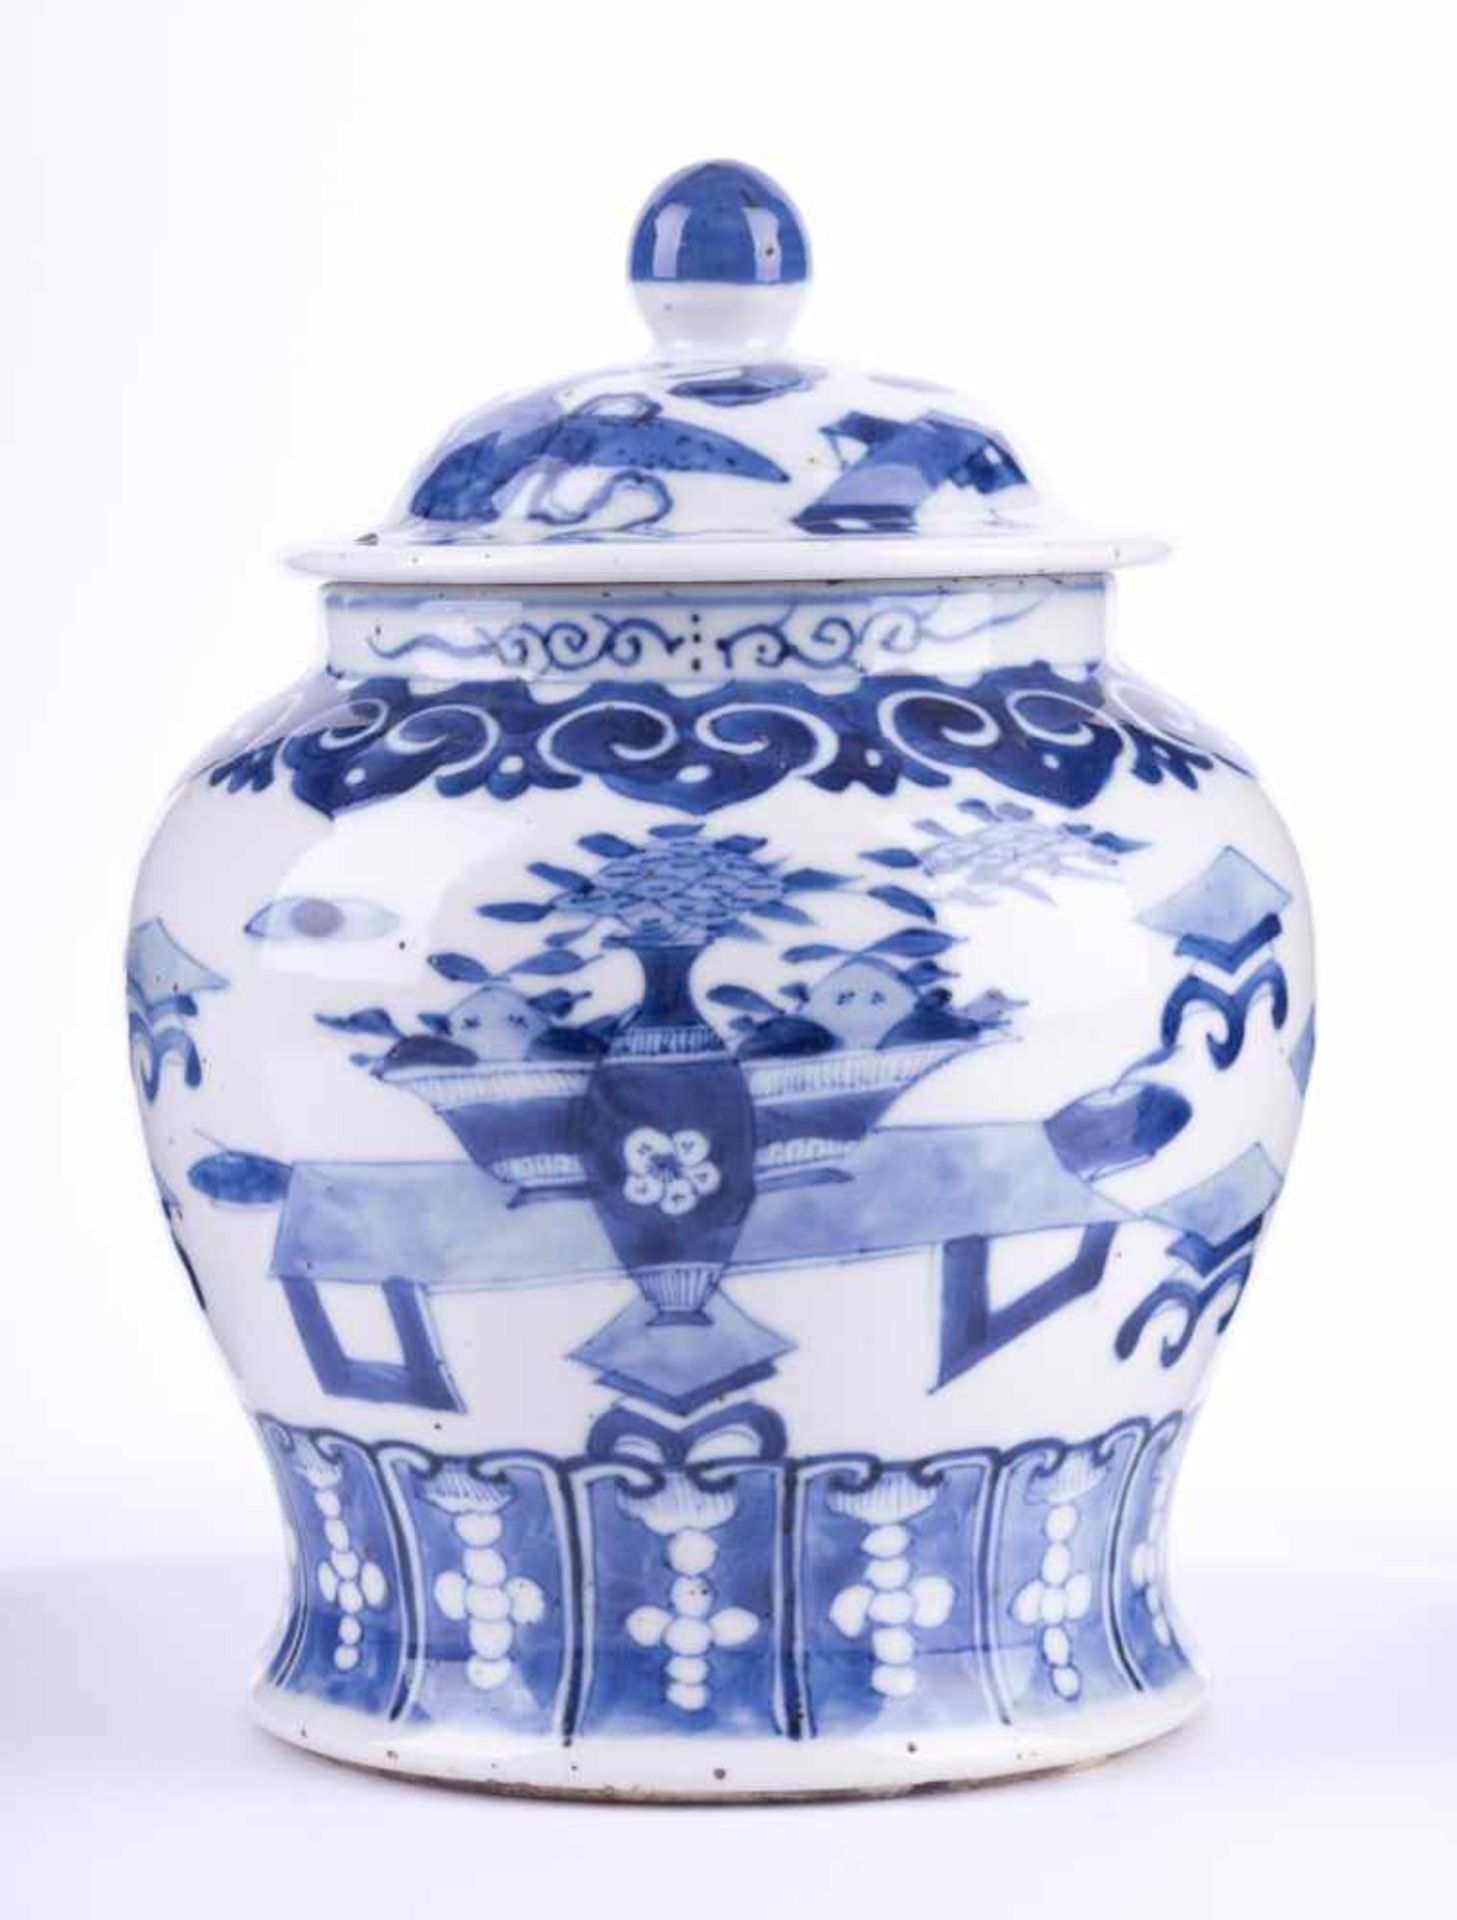 Deckelgefäß China 19. Jhd. mit blau-weiß Malerei, H: ca. 20 cm, Ø 14 cm Lidded vessel, China 19th